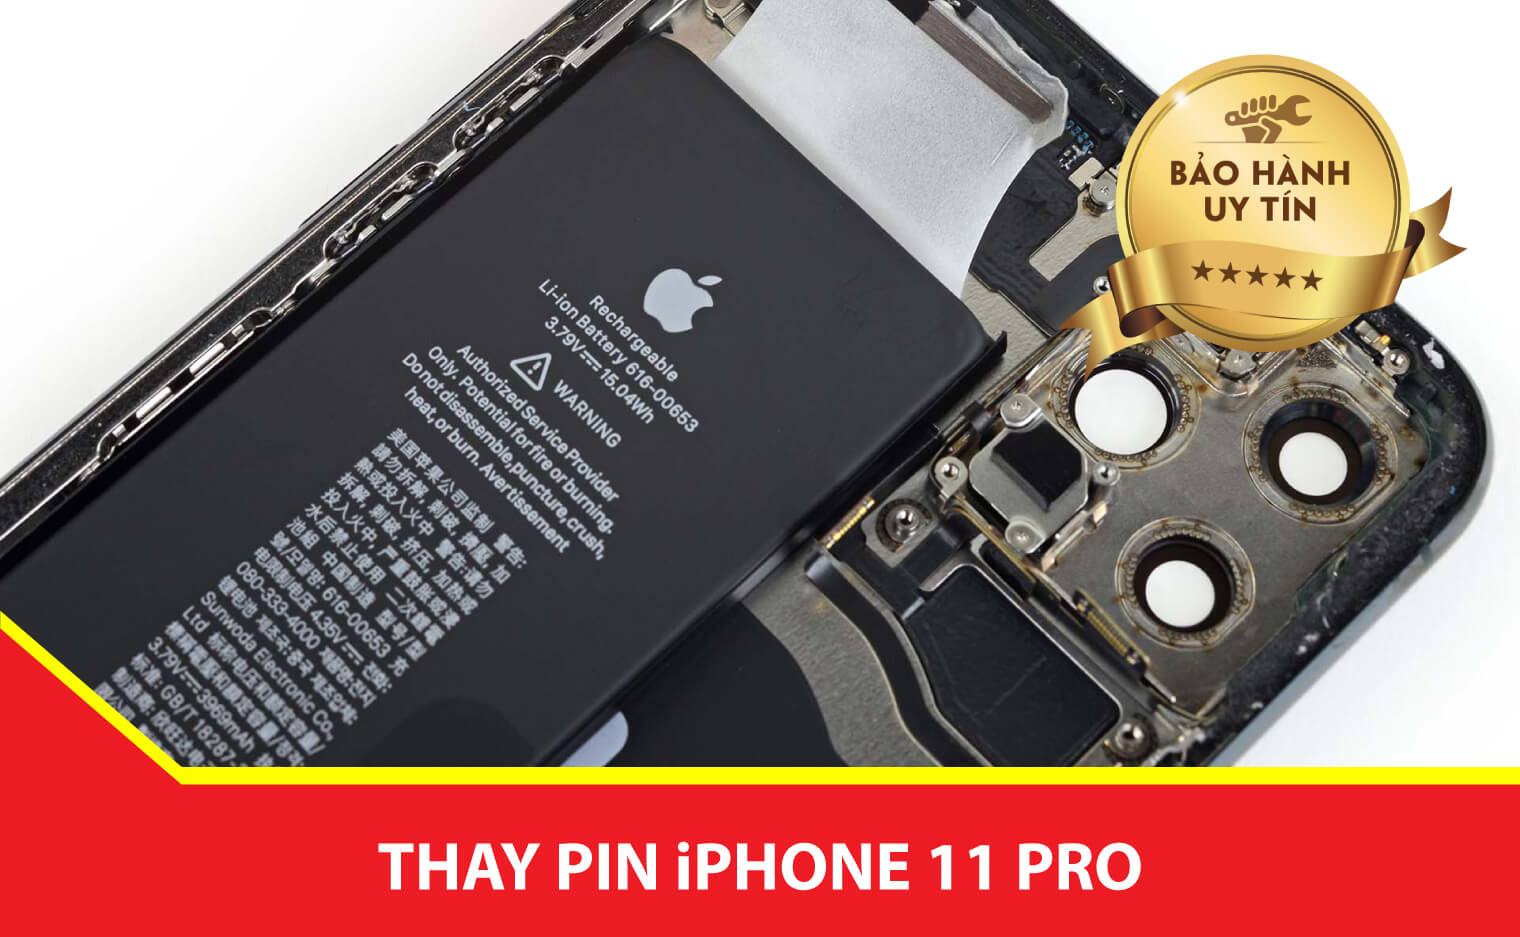 thay pin iphone 11 pro Ha Noi